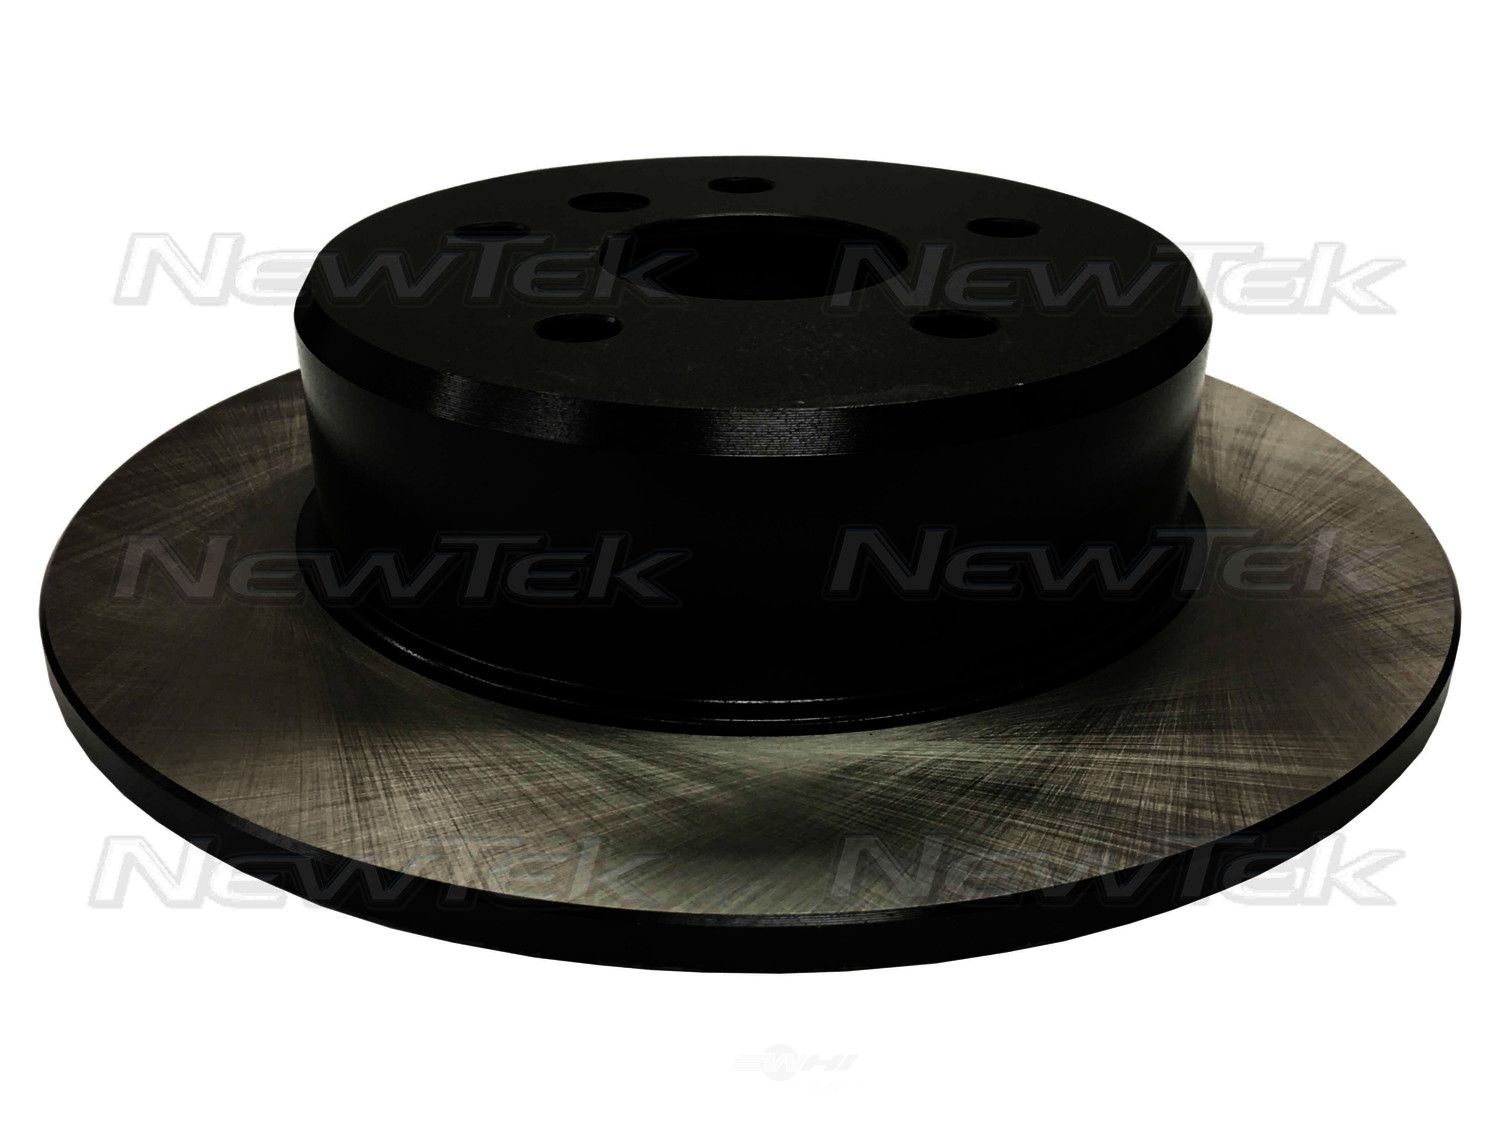 NEWTEK AUTOMOTIVE - Newtek Black Knight Disc Brake Rotor - NWT 31110E